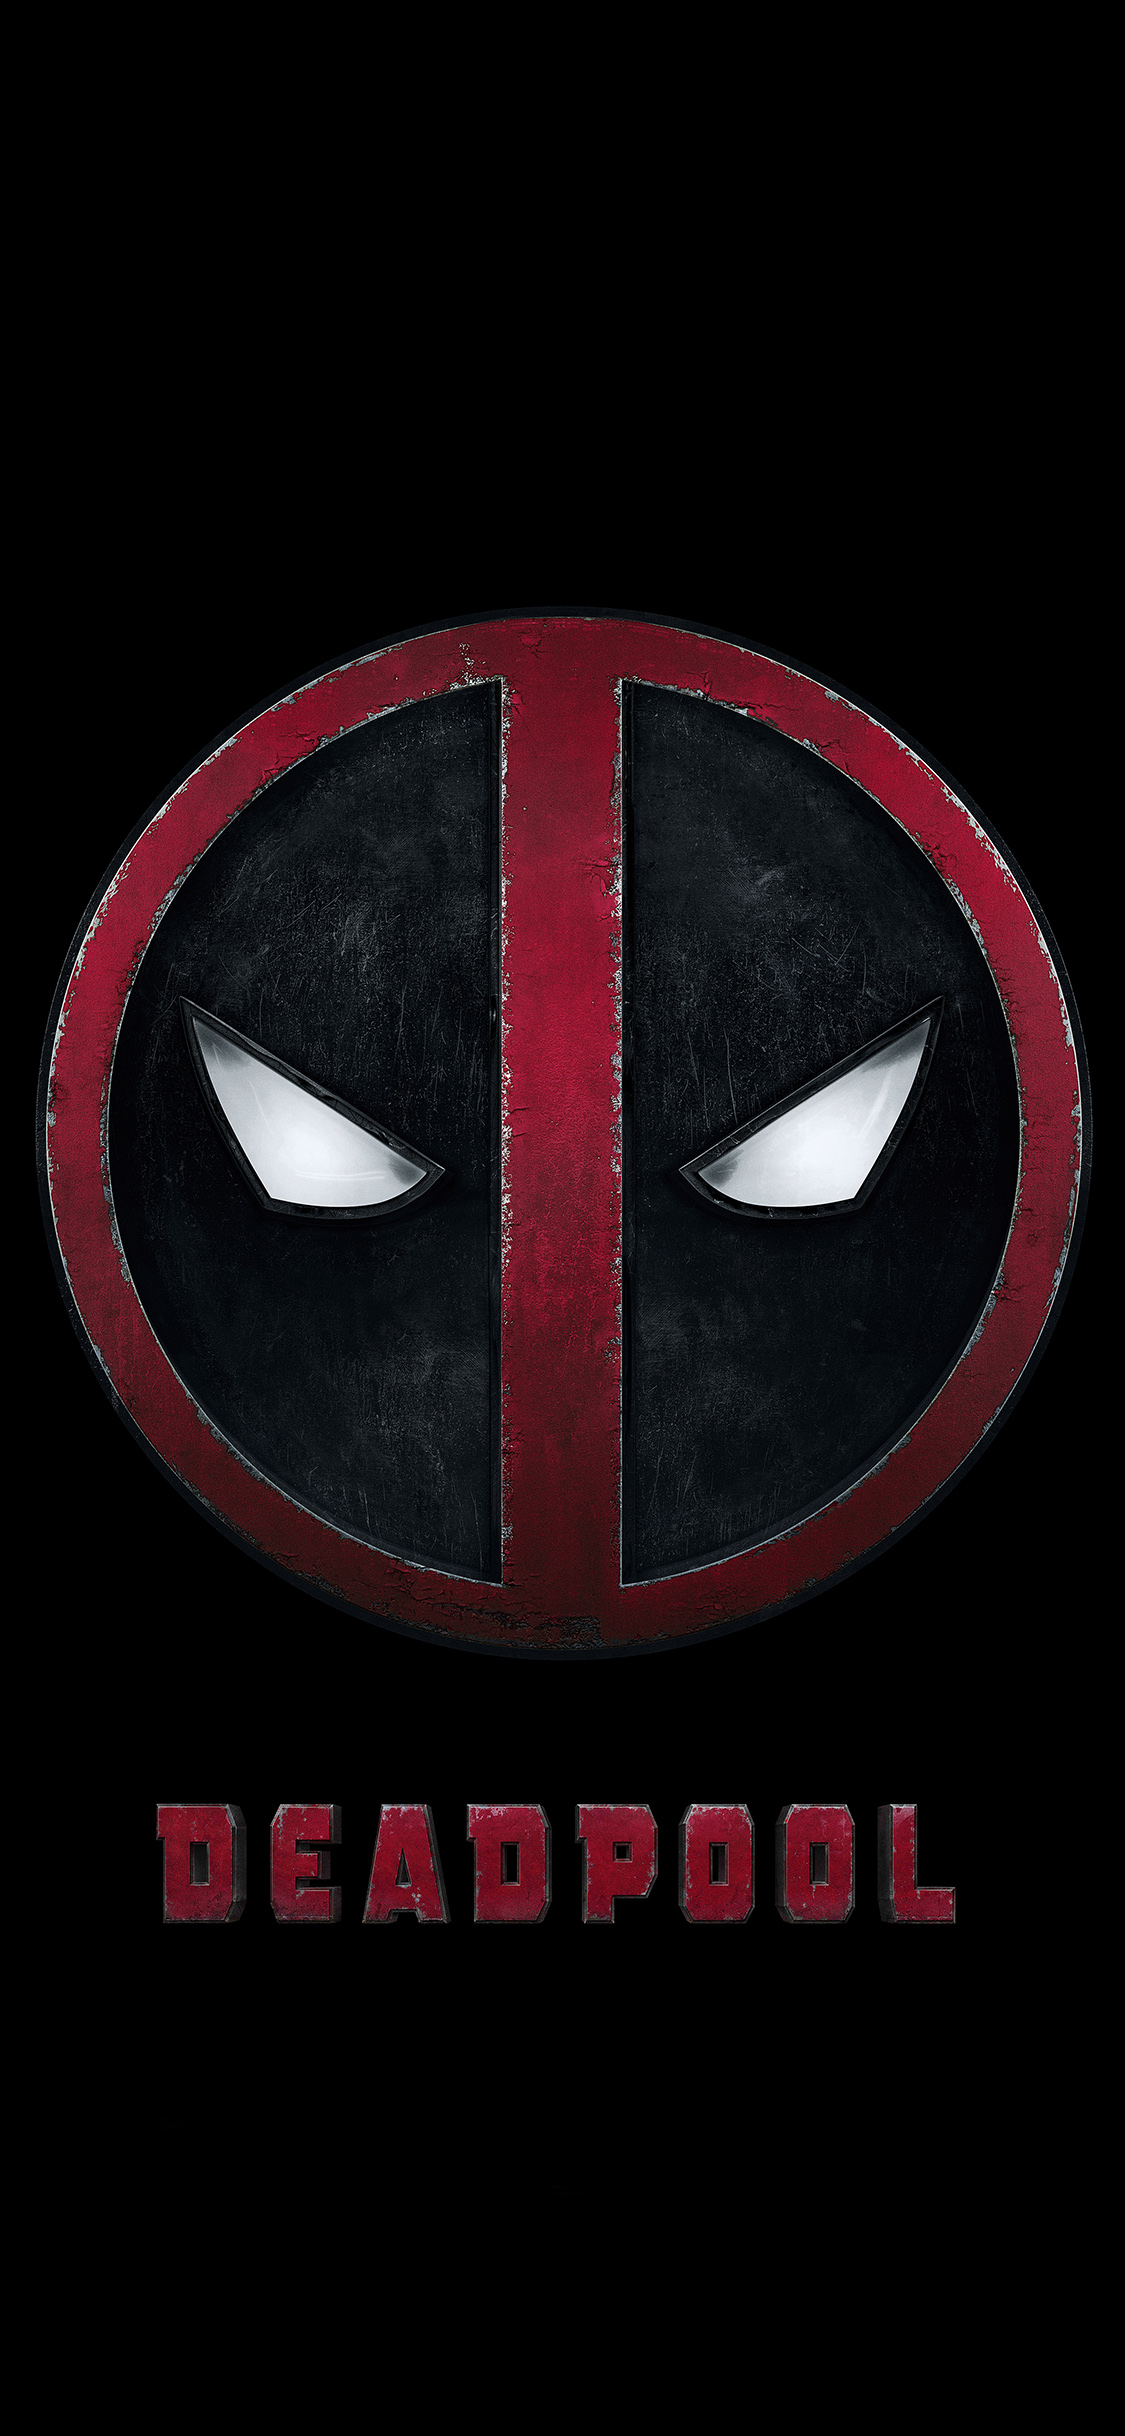 deadpool logo fondo de pantalla,consorcio inactivo,personaje de ficción,superhéroe,hombre murciélago,símbolo